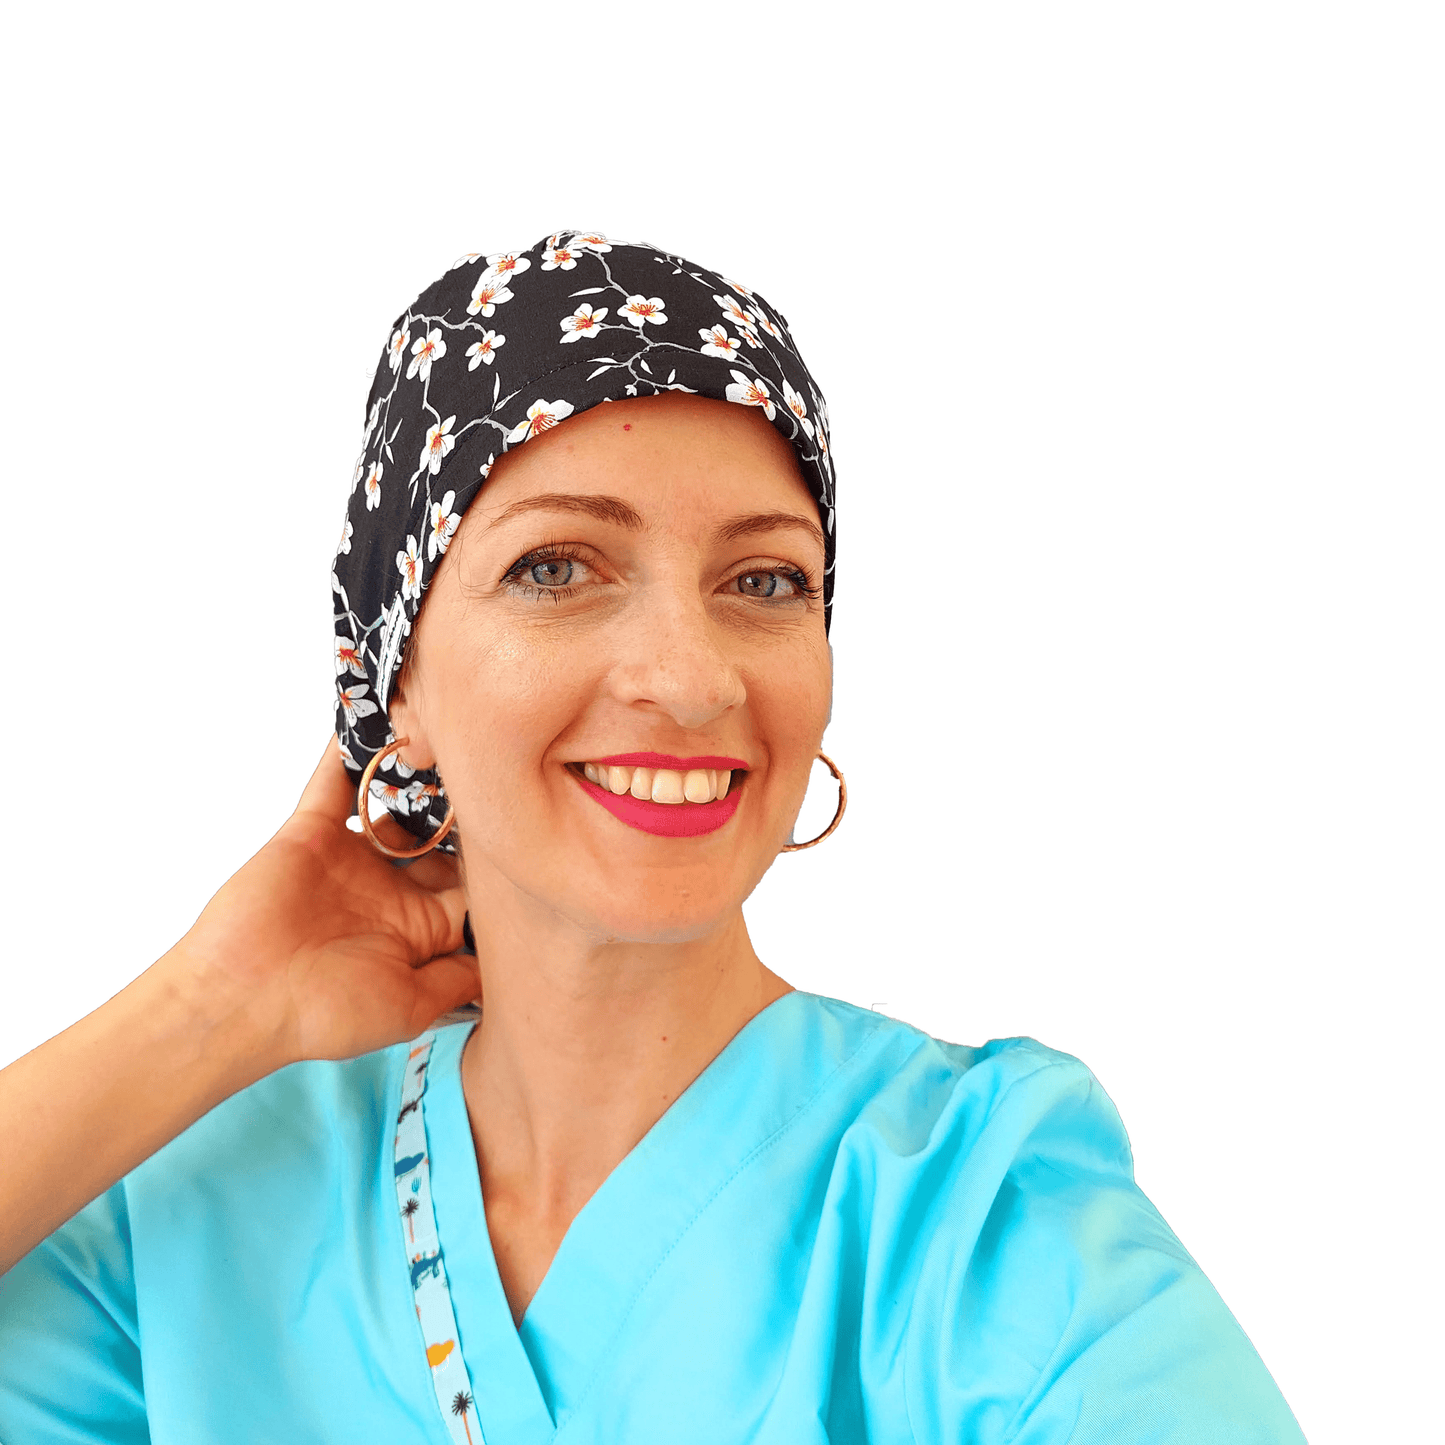 Floral Scrub Cap For Women -Surgical Cap - [scrub_hat]-[scrub_cap_for_women]-[surgical_cap]